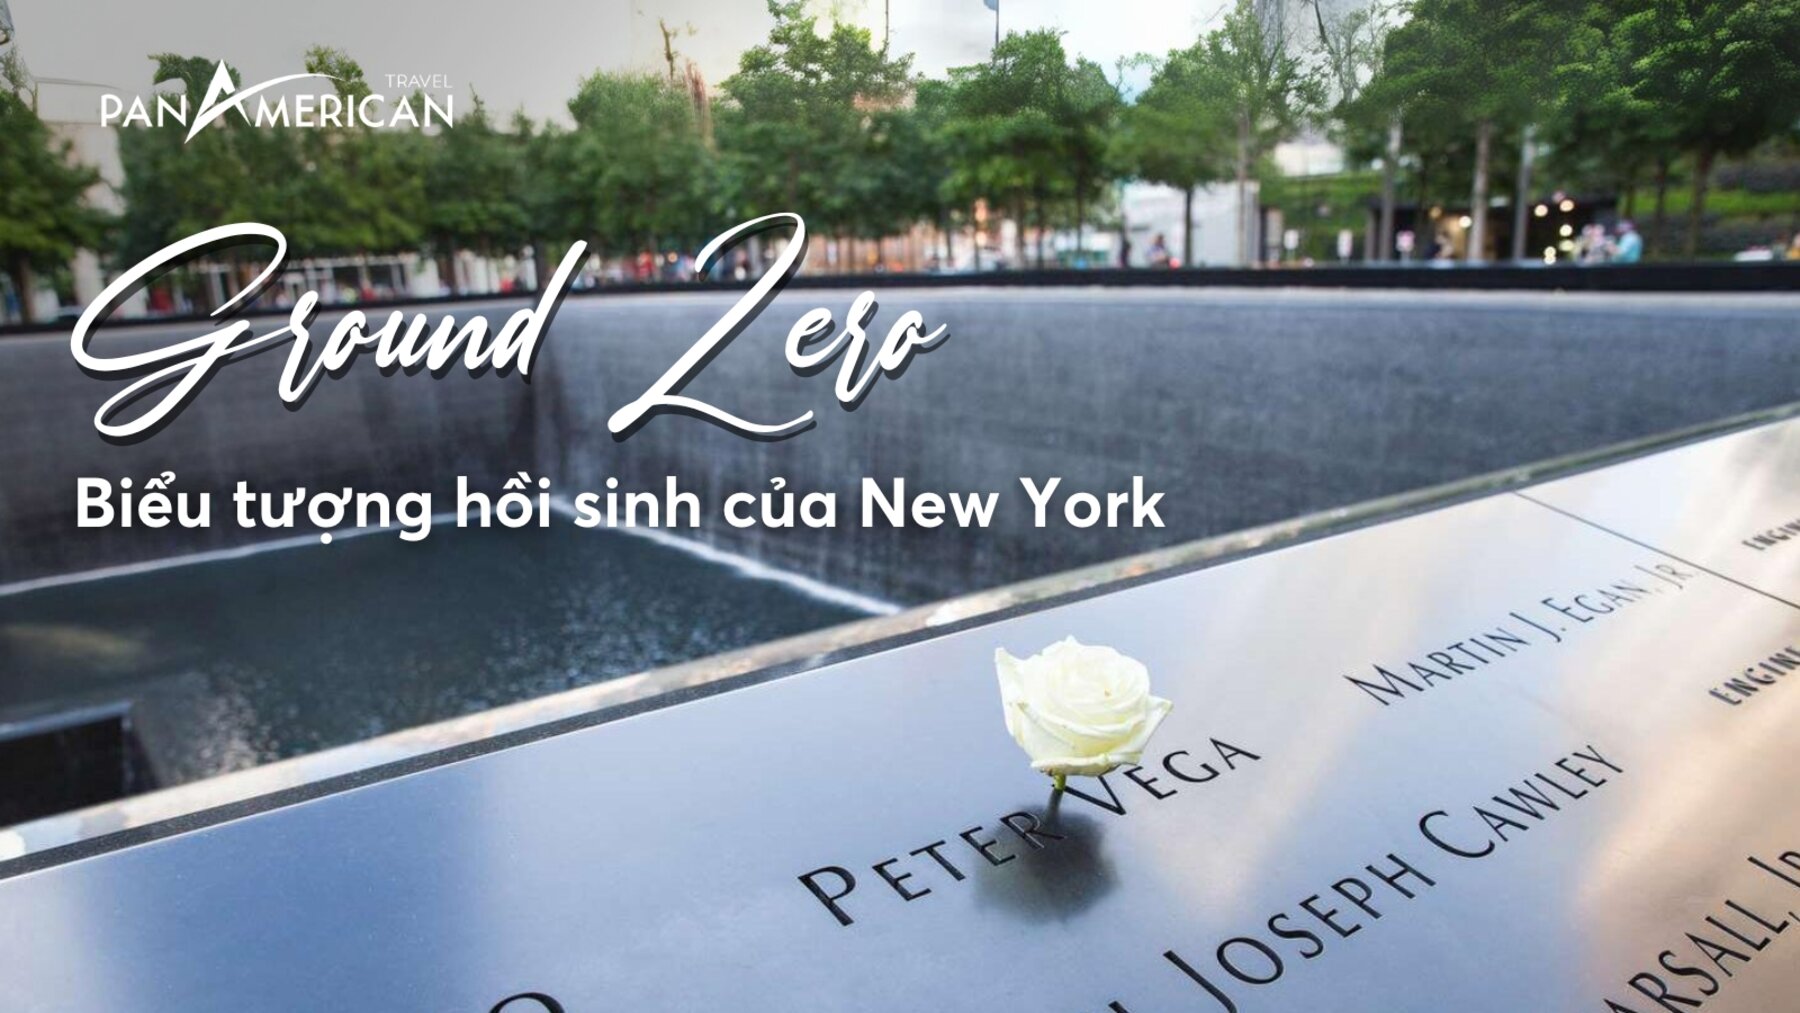 Thăm quan Ground Zero - Biểu tượng hồi sinh từ những đau thương của New York